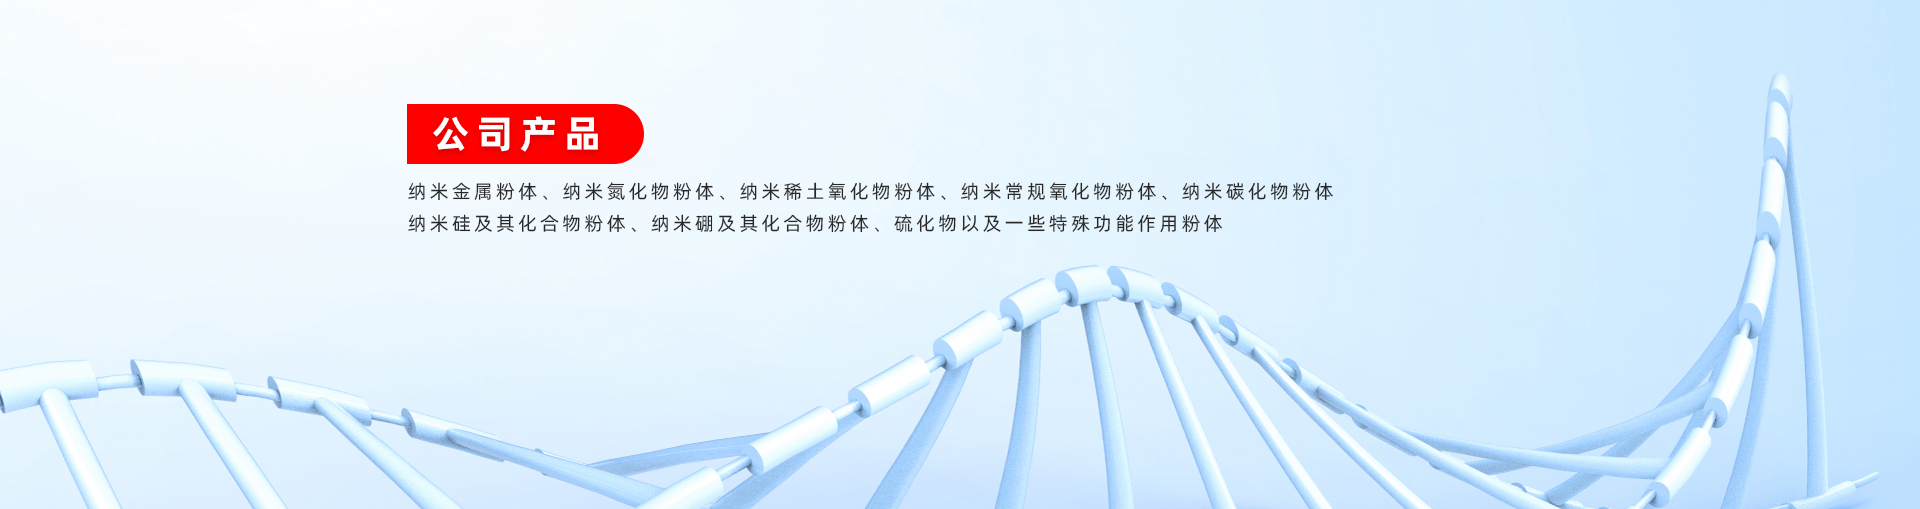 上海允复纳米科技有限公司